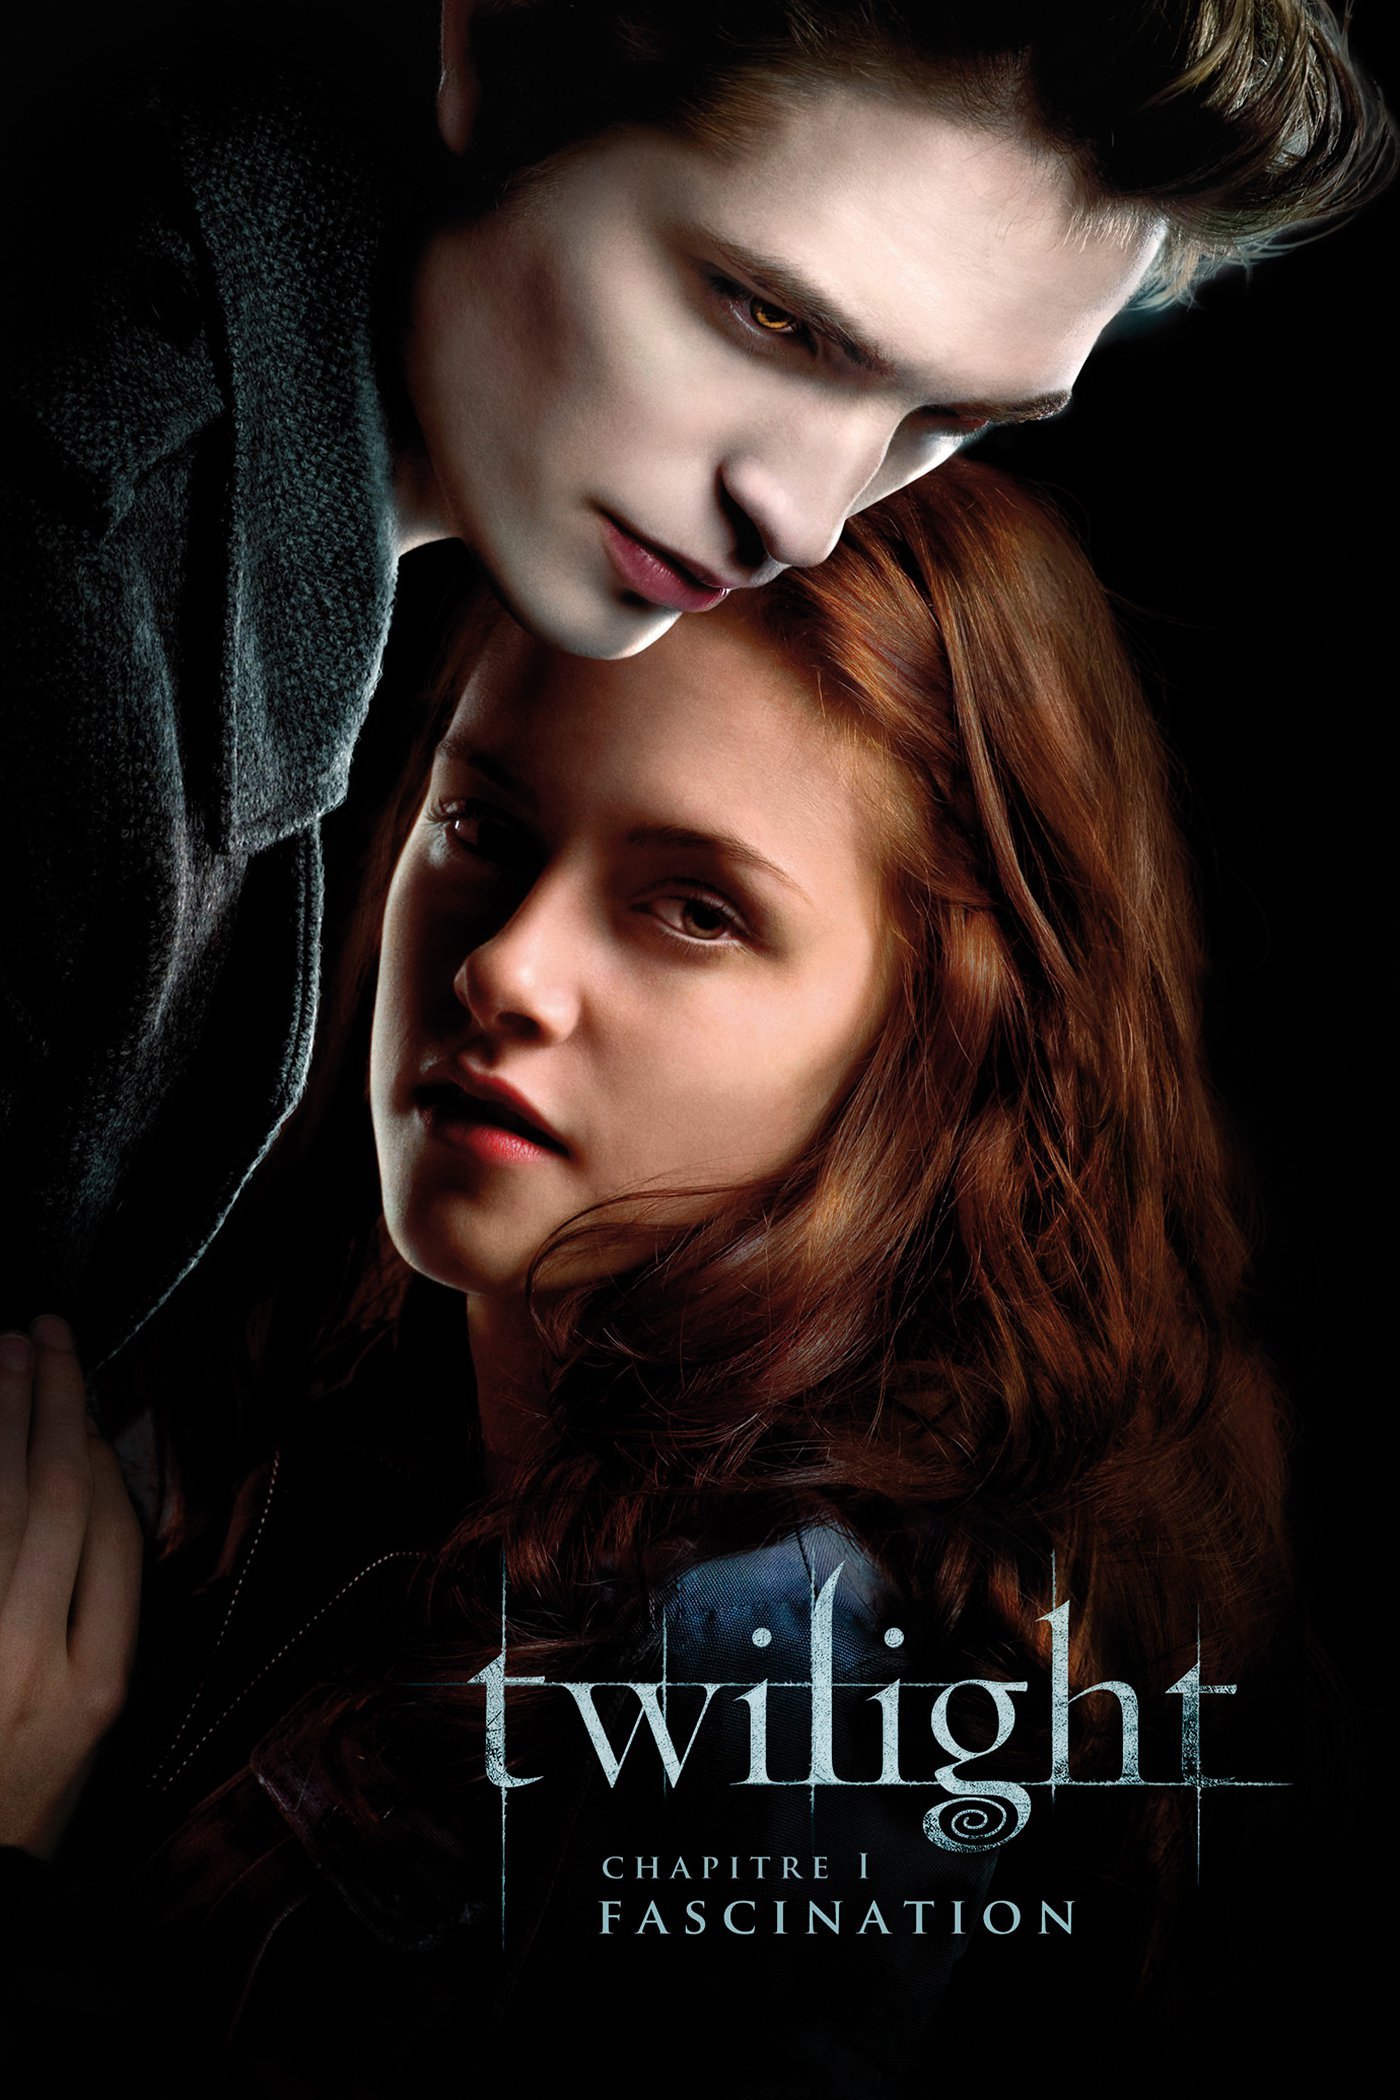 Twilight, chapitre 1 : Fascination (Film, 2009) — CinéSéries